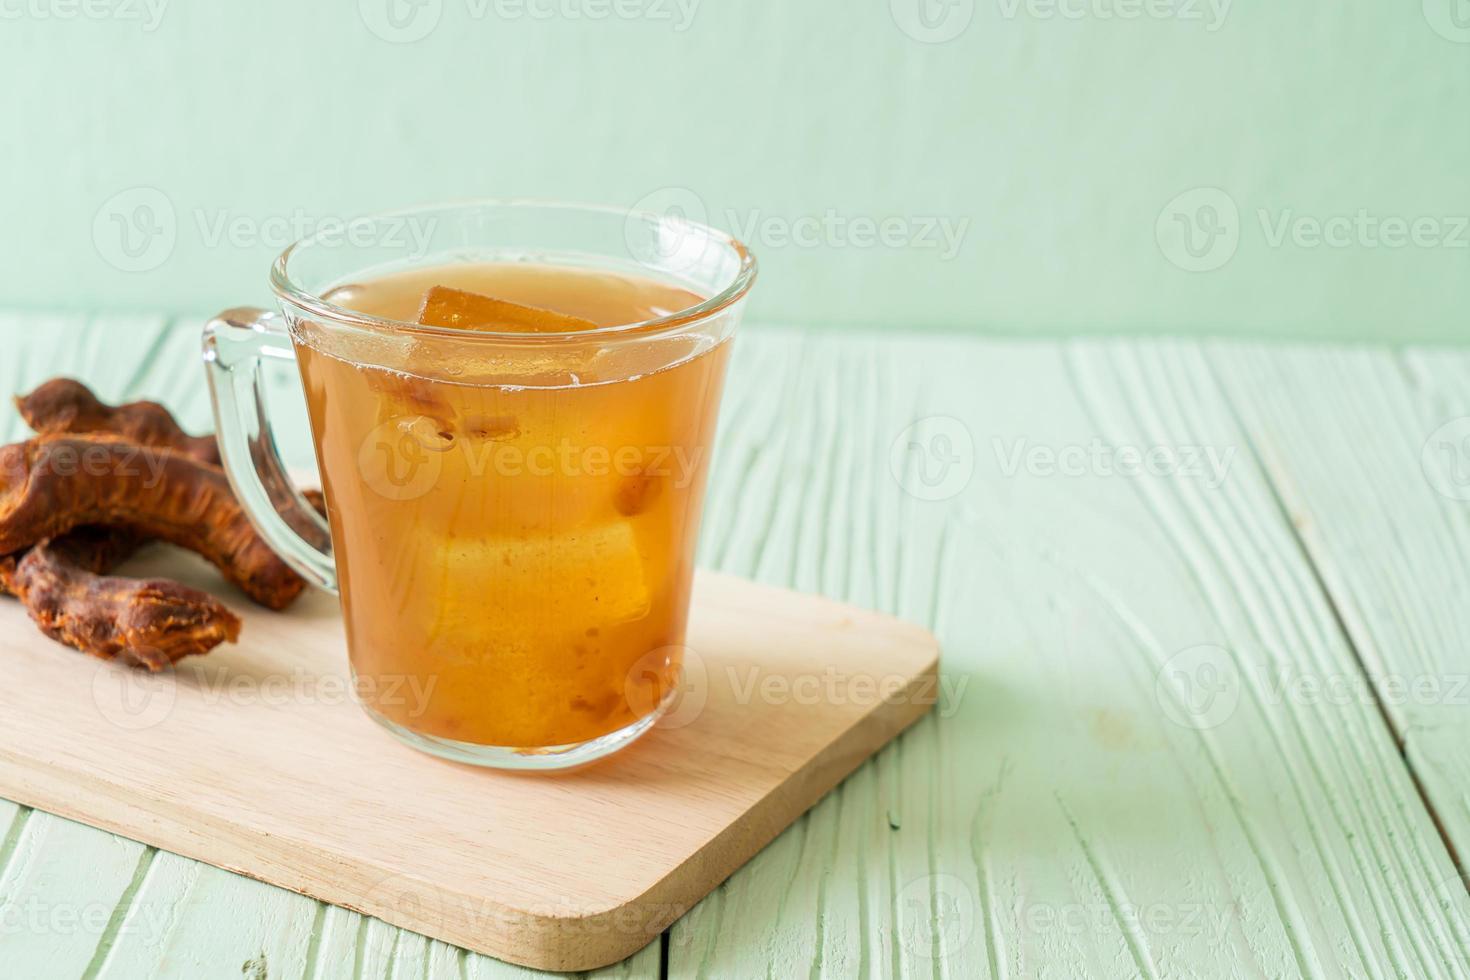 Deliciosa bebida dulce jugo de tamarindo y cubito de hielo. foto